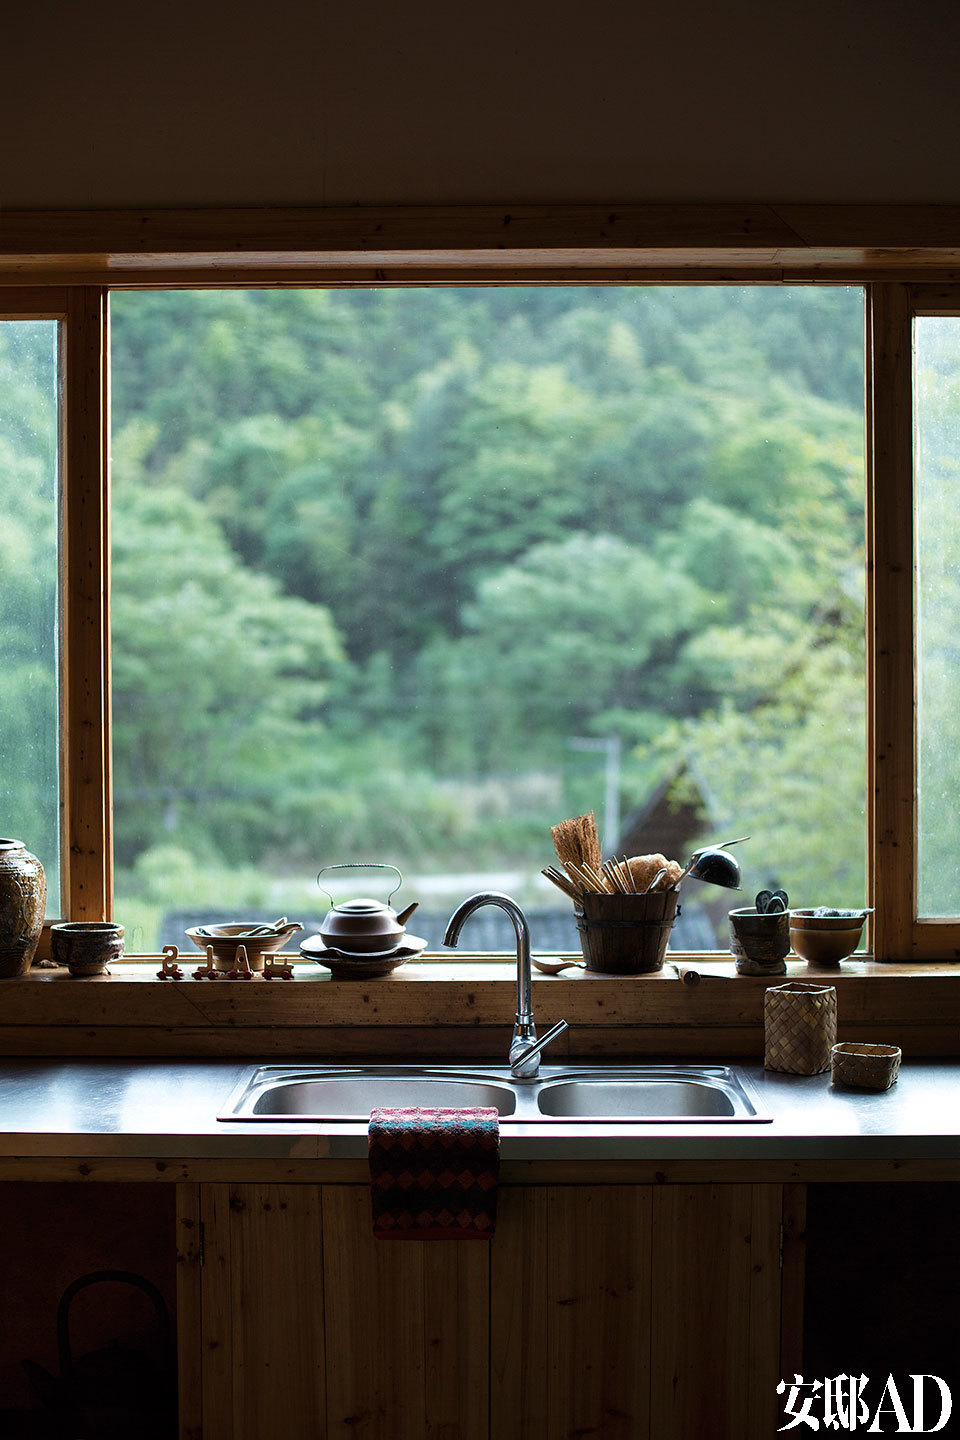 李见深每天使用这间厨房制作可口的乡间菜肴，窗外的“风景画”作者不是他，而是三宝的大自然。